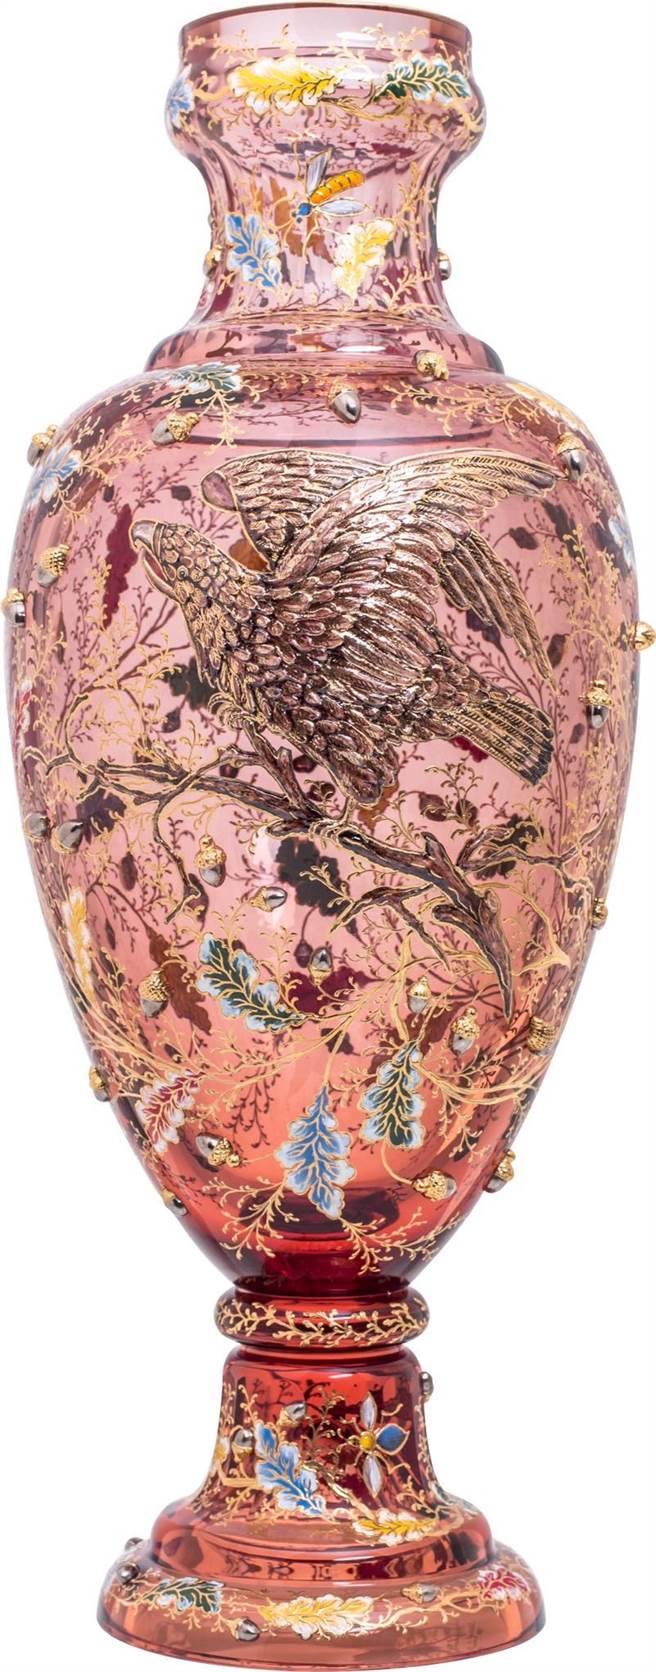 《展翼高飛》是彩繪大師杰樂奇以橡樹林的黑鷹重塑1885年的魔幻記憶，滿溢奇幻絢麗之風格。（國裕精品提供）